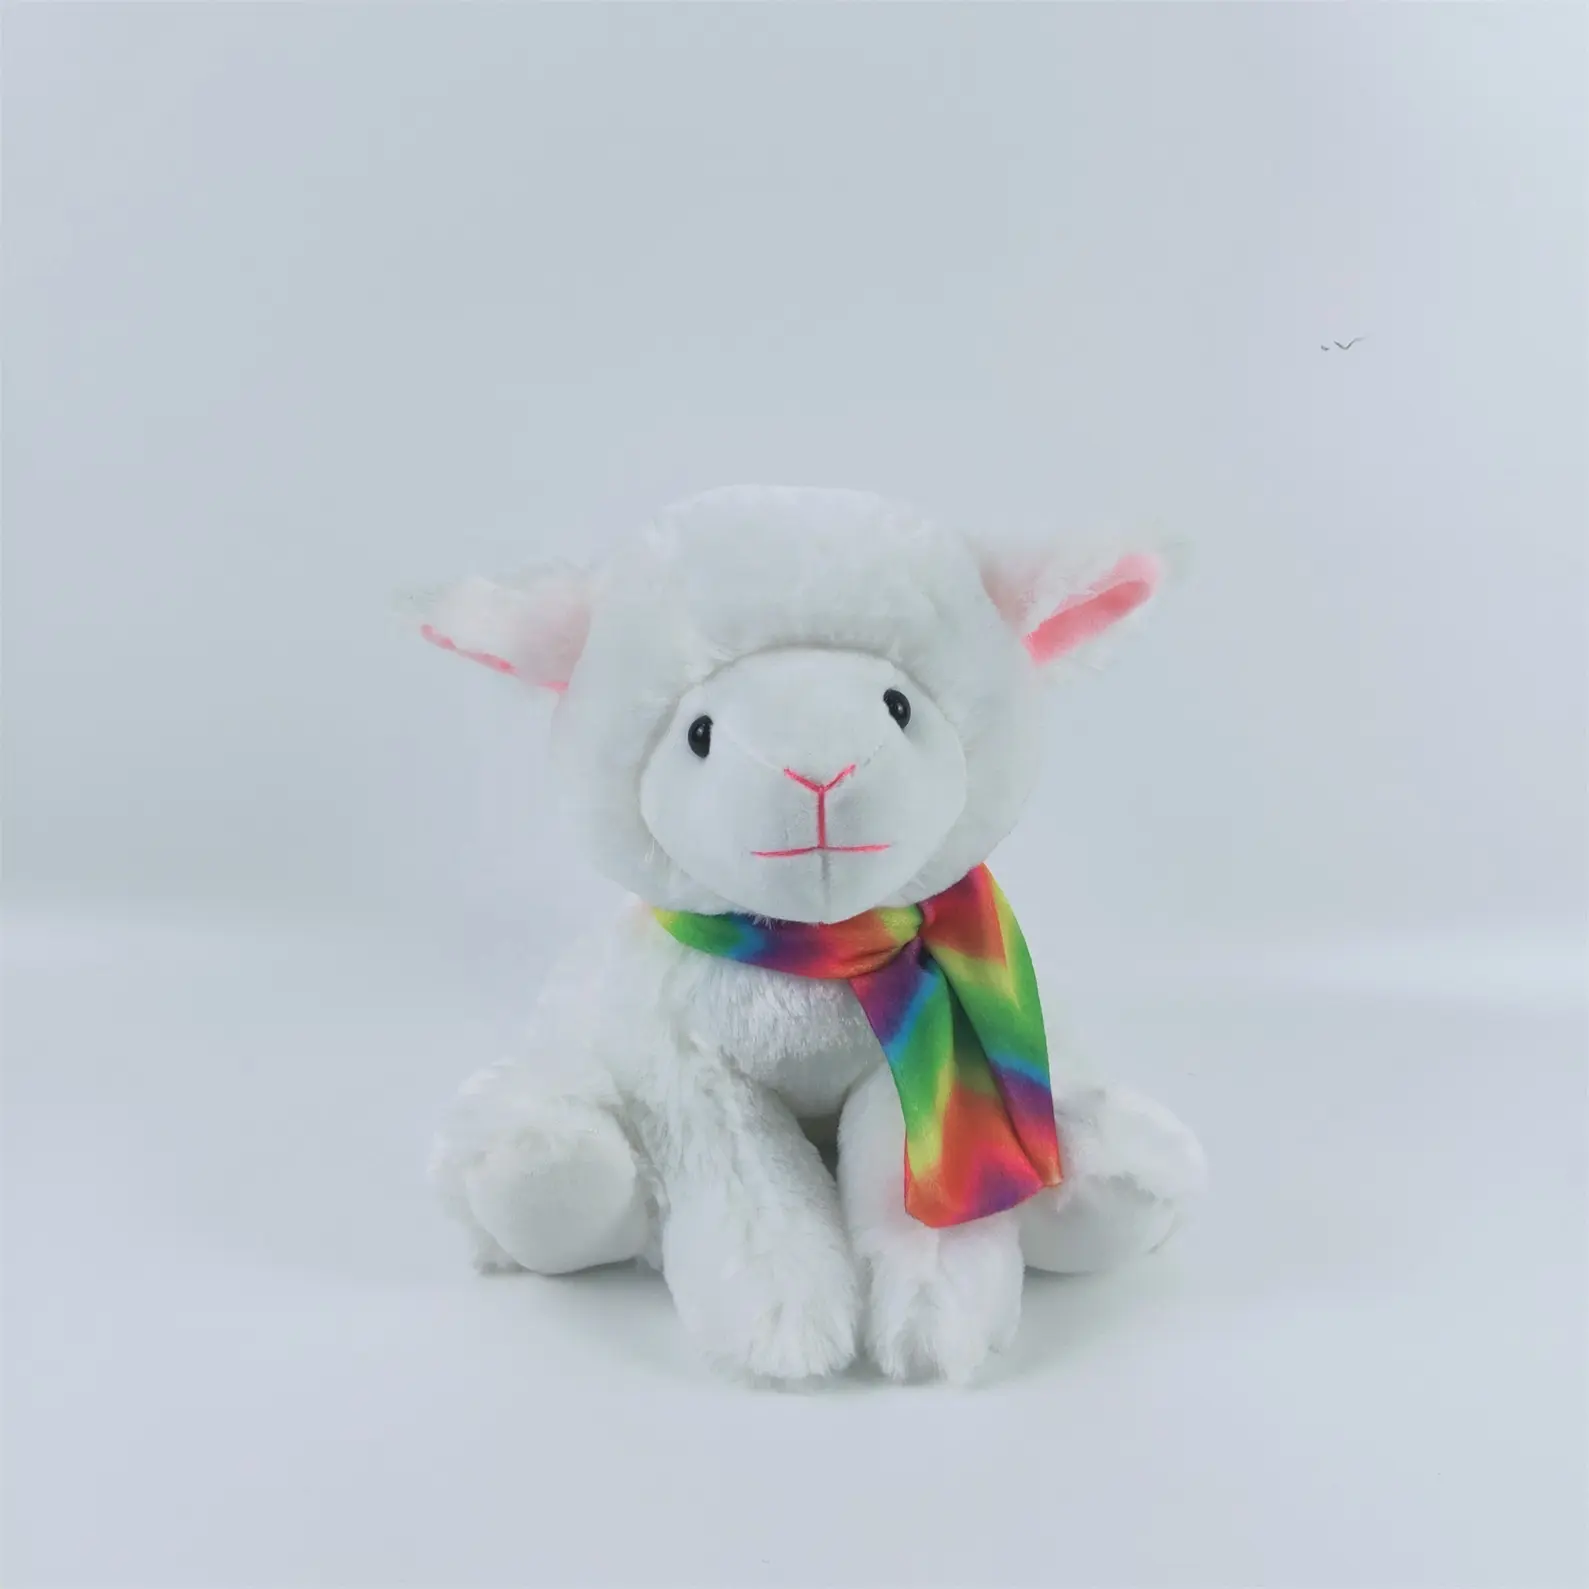 צעצוע של פסטיץ צעצוע כבשים לבן לאסטר רך ממולא חמוד עם צעיף צבעוני